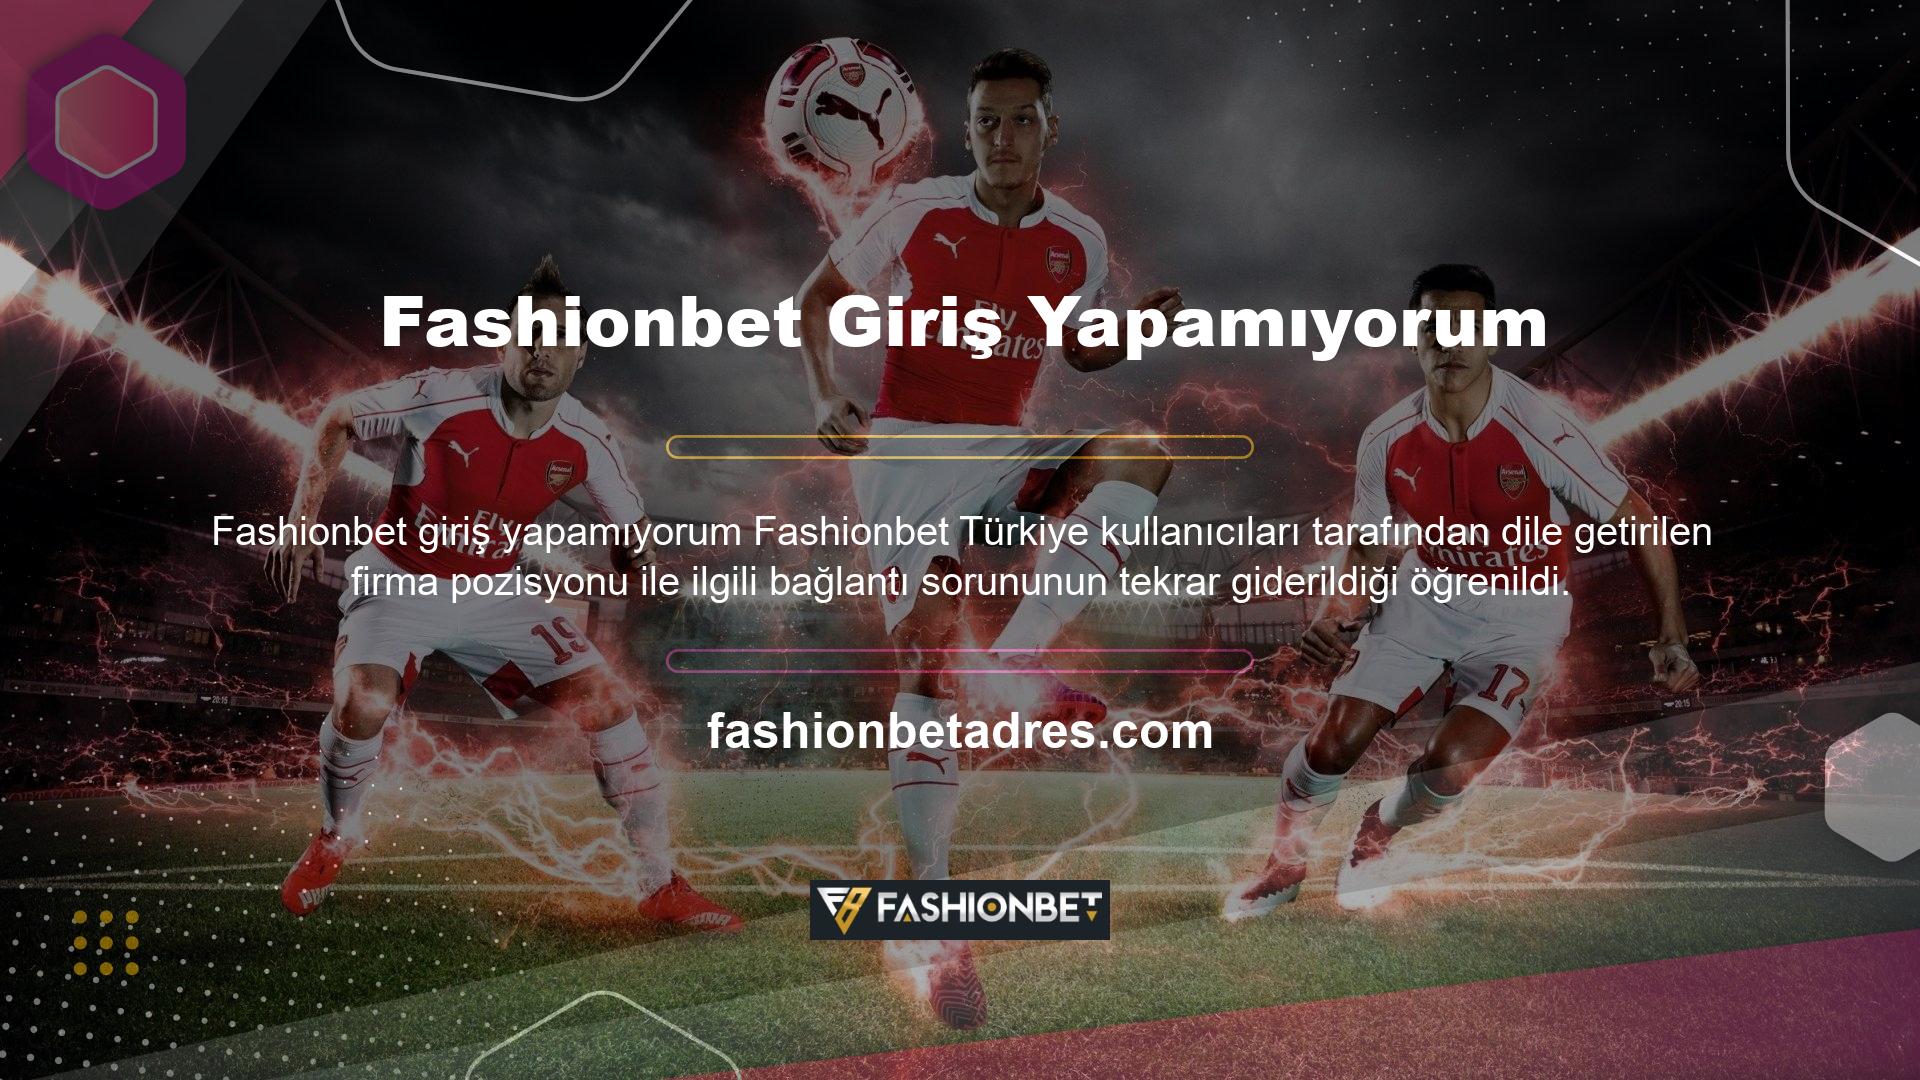 Türk hukukuna göre Fashionbet sitesinin ait olduğu ticari işletmenin kapatılmasına yönelik bir uygulama bulunmamaktadır